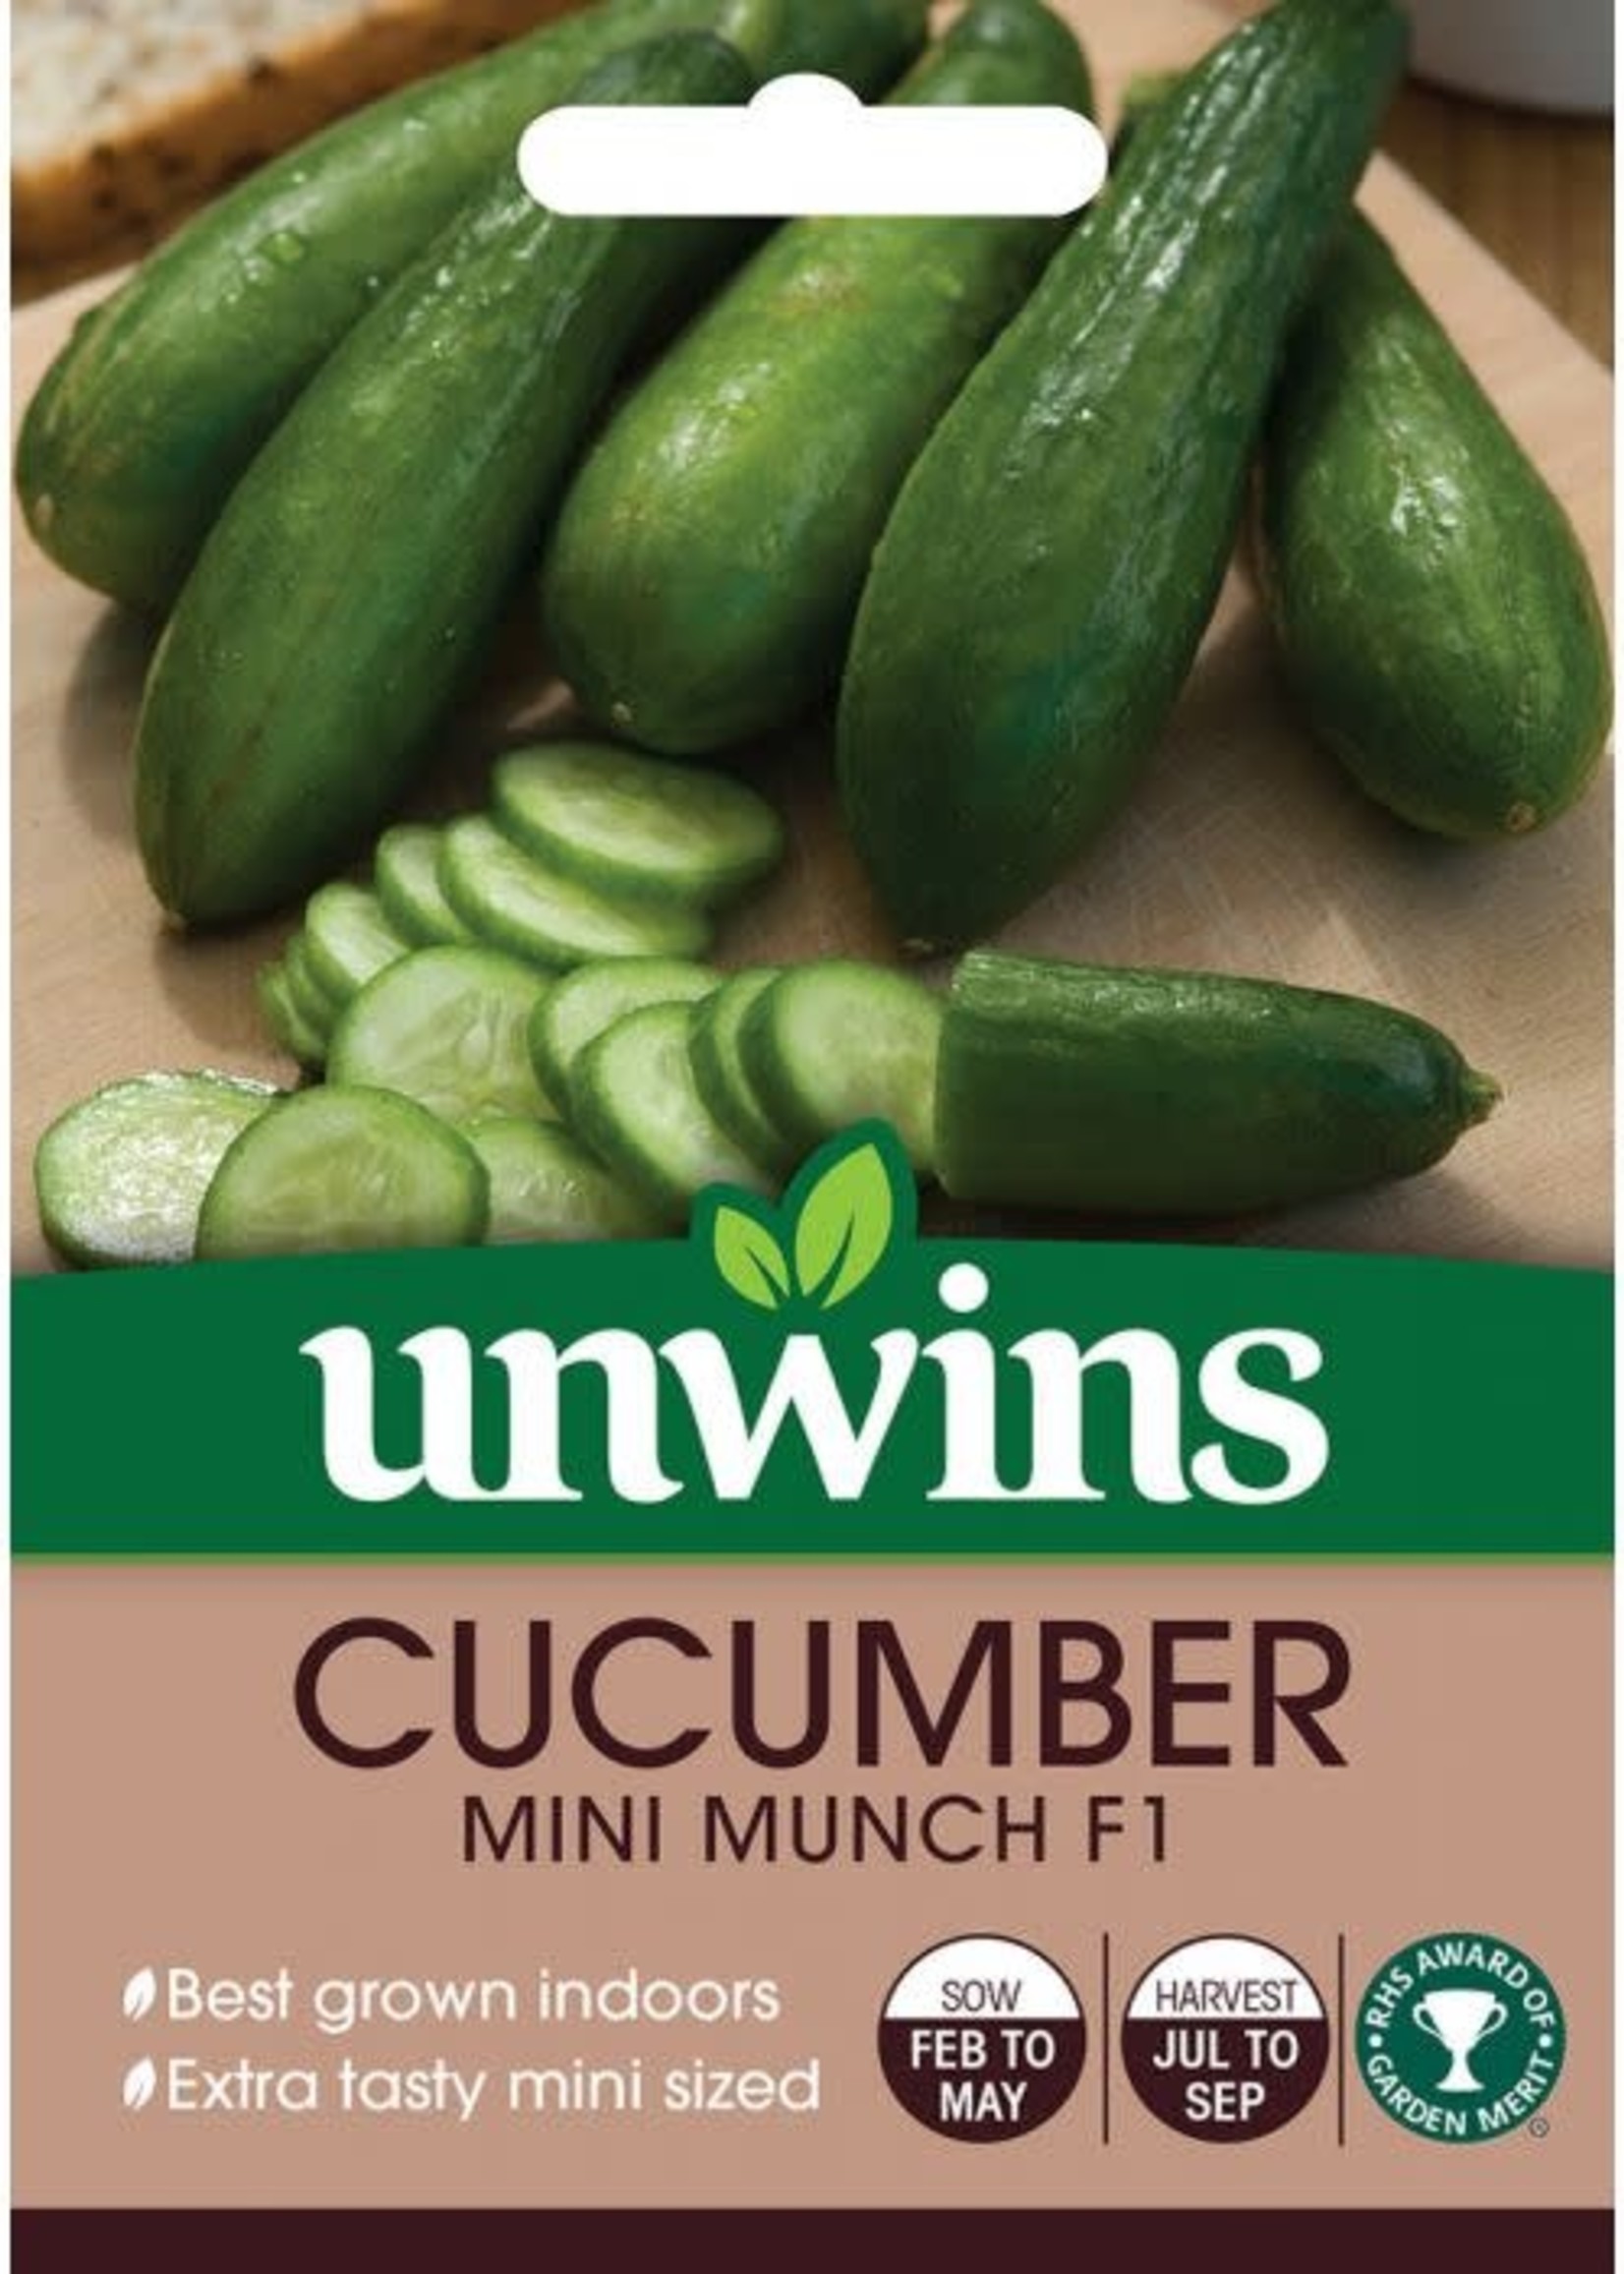 Unwins Cucumber - Mini Munch F1